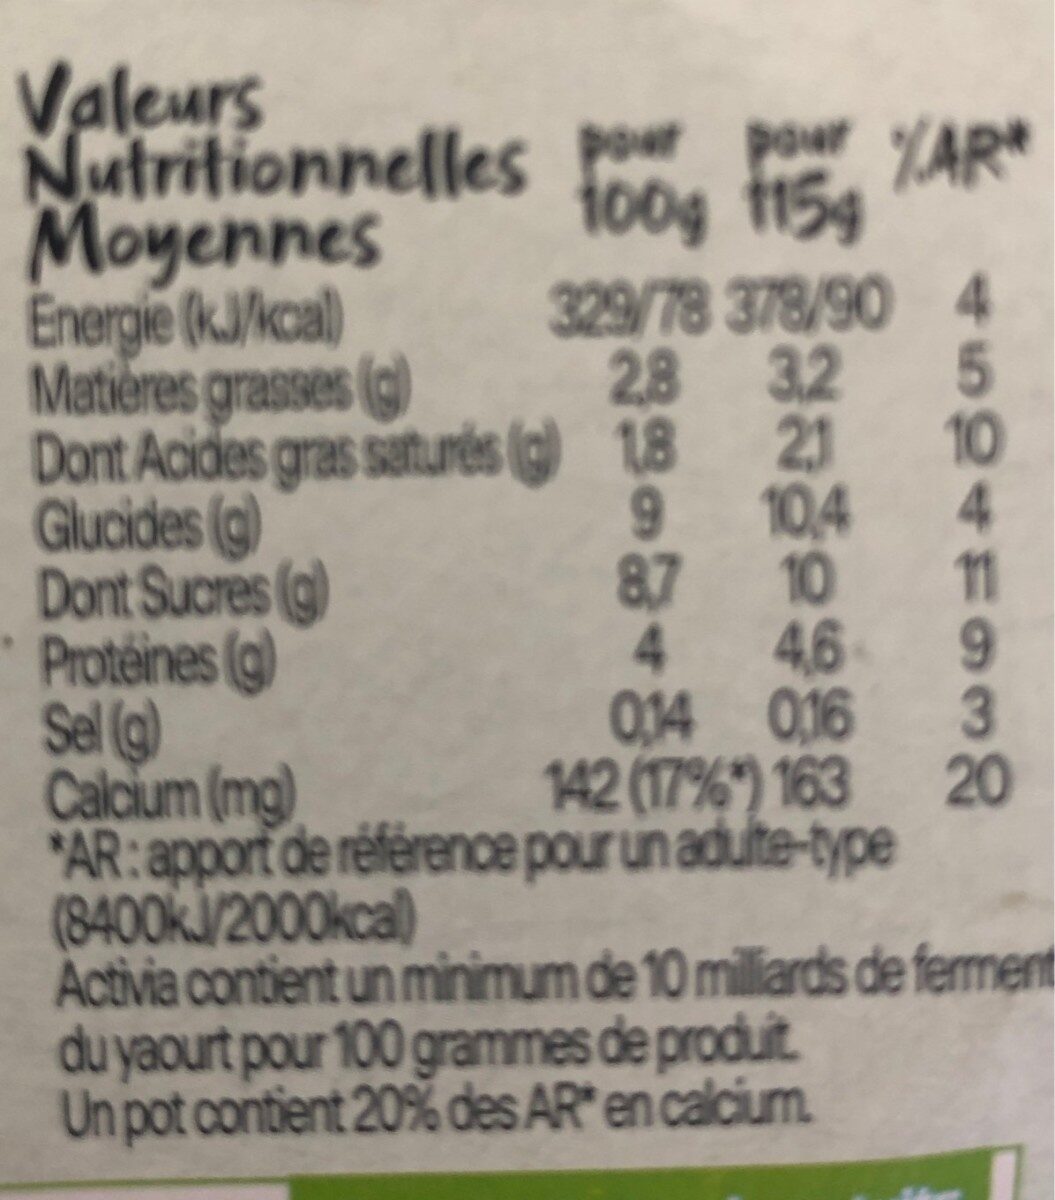 Activia sans sucre ajoute cerise datte jasmin 115 g x 4 - Nutrition facts - fr